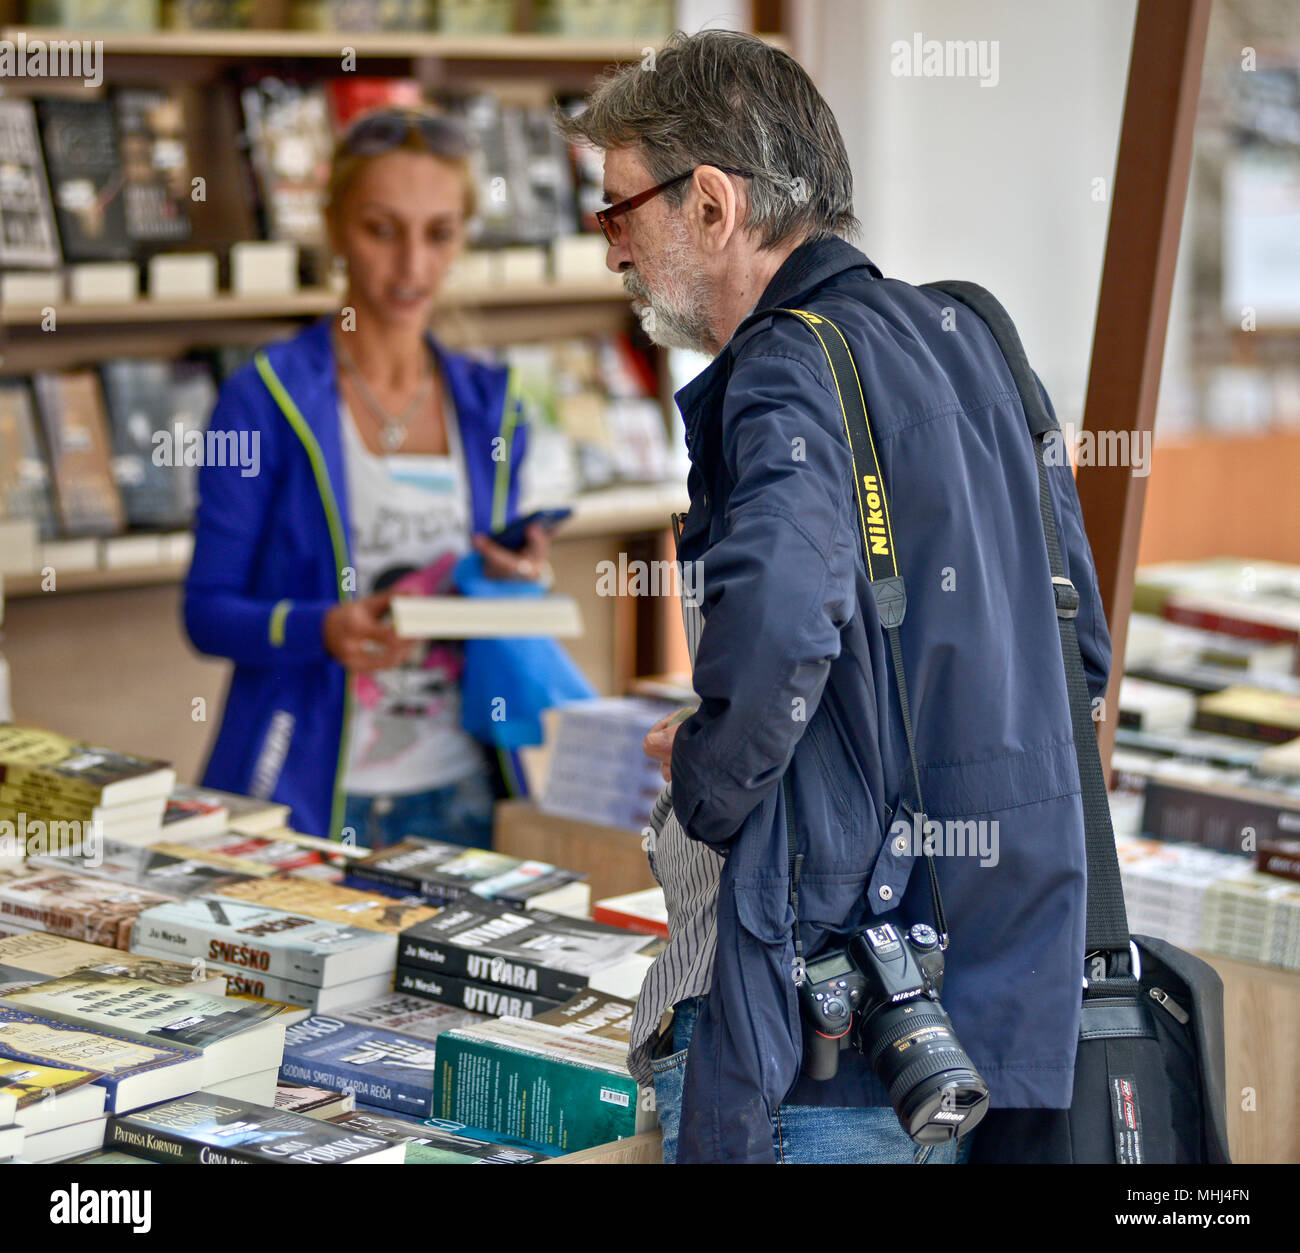 Premier Salon du livre Andricgrad, Visegrad, Bosnie et Herzégovine Banque D'Images